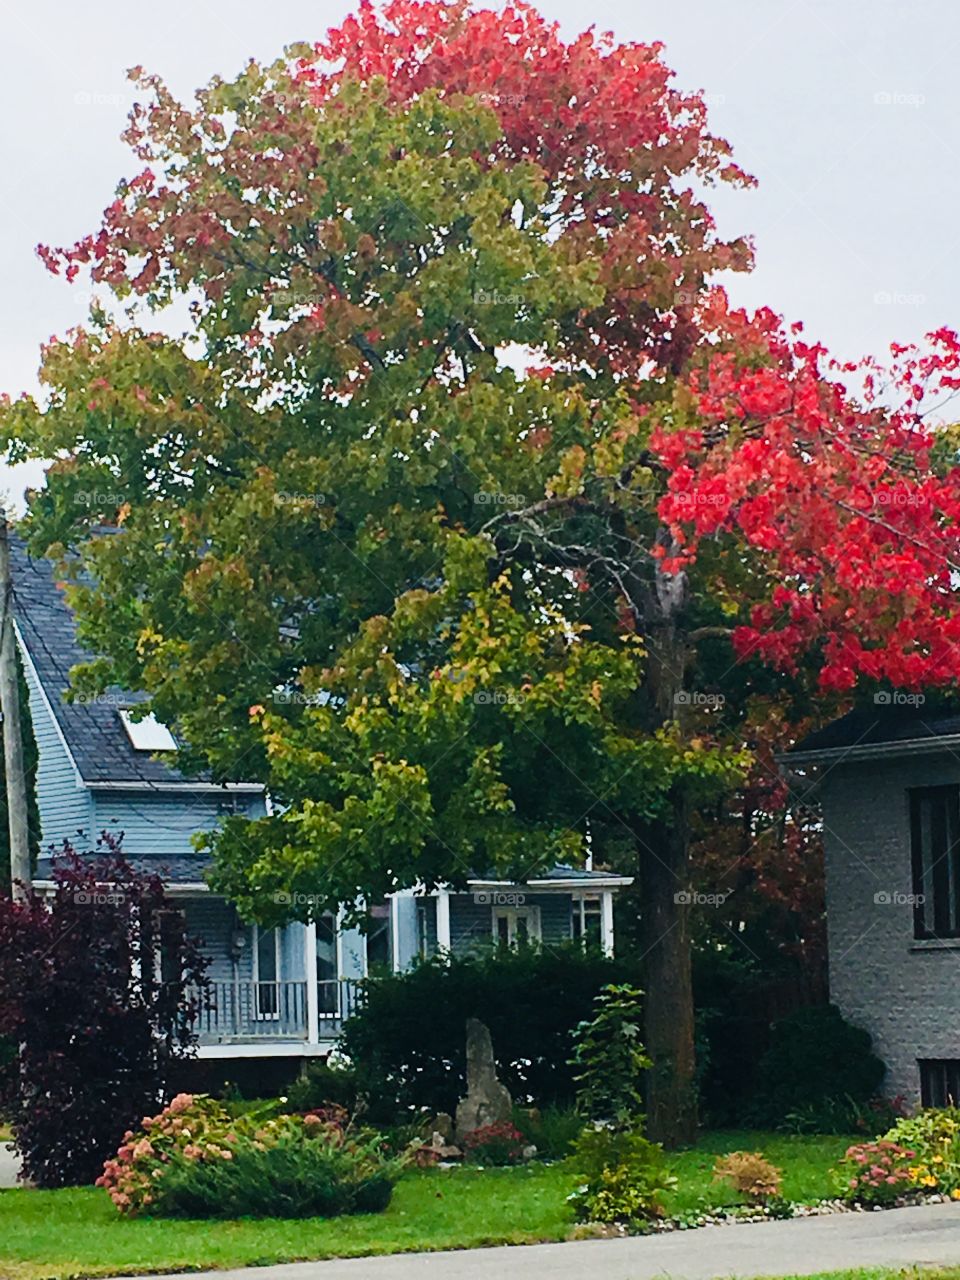 Autumn Tree Beside a House-Septembre 30 2018-Terrebonne, Quebec, Canada 